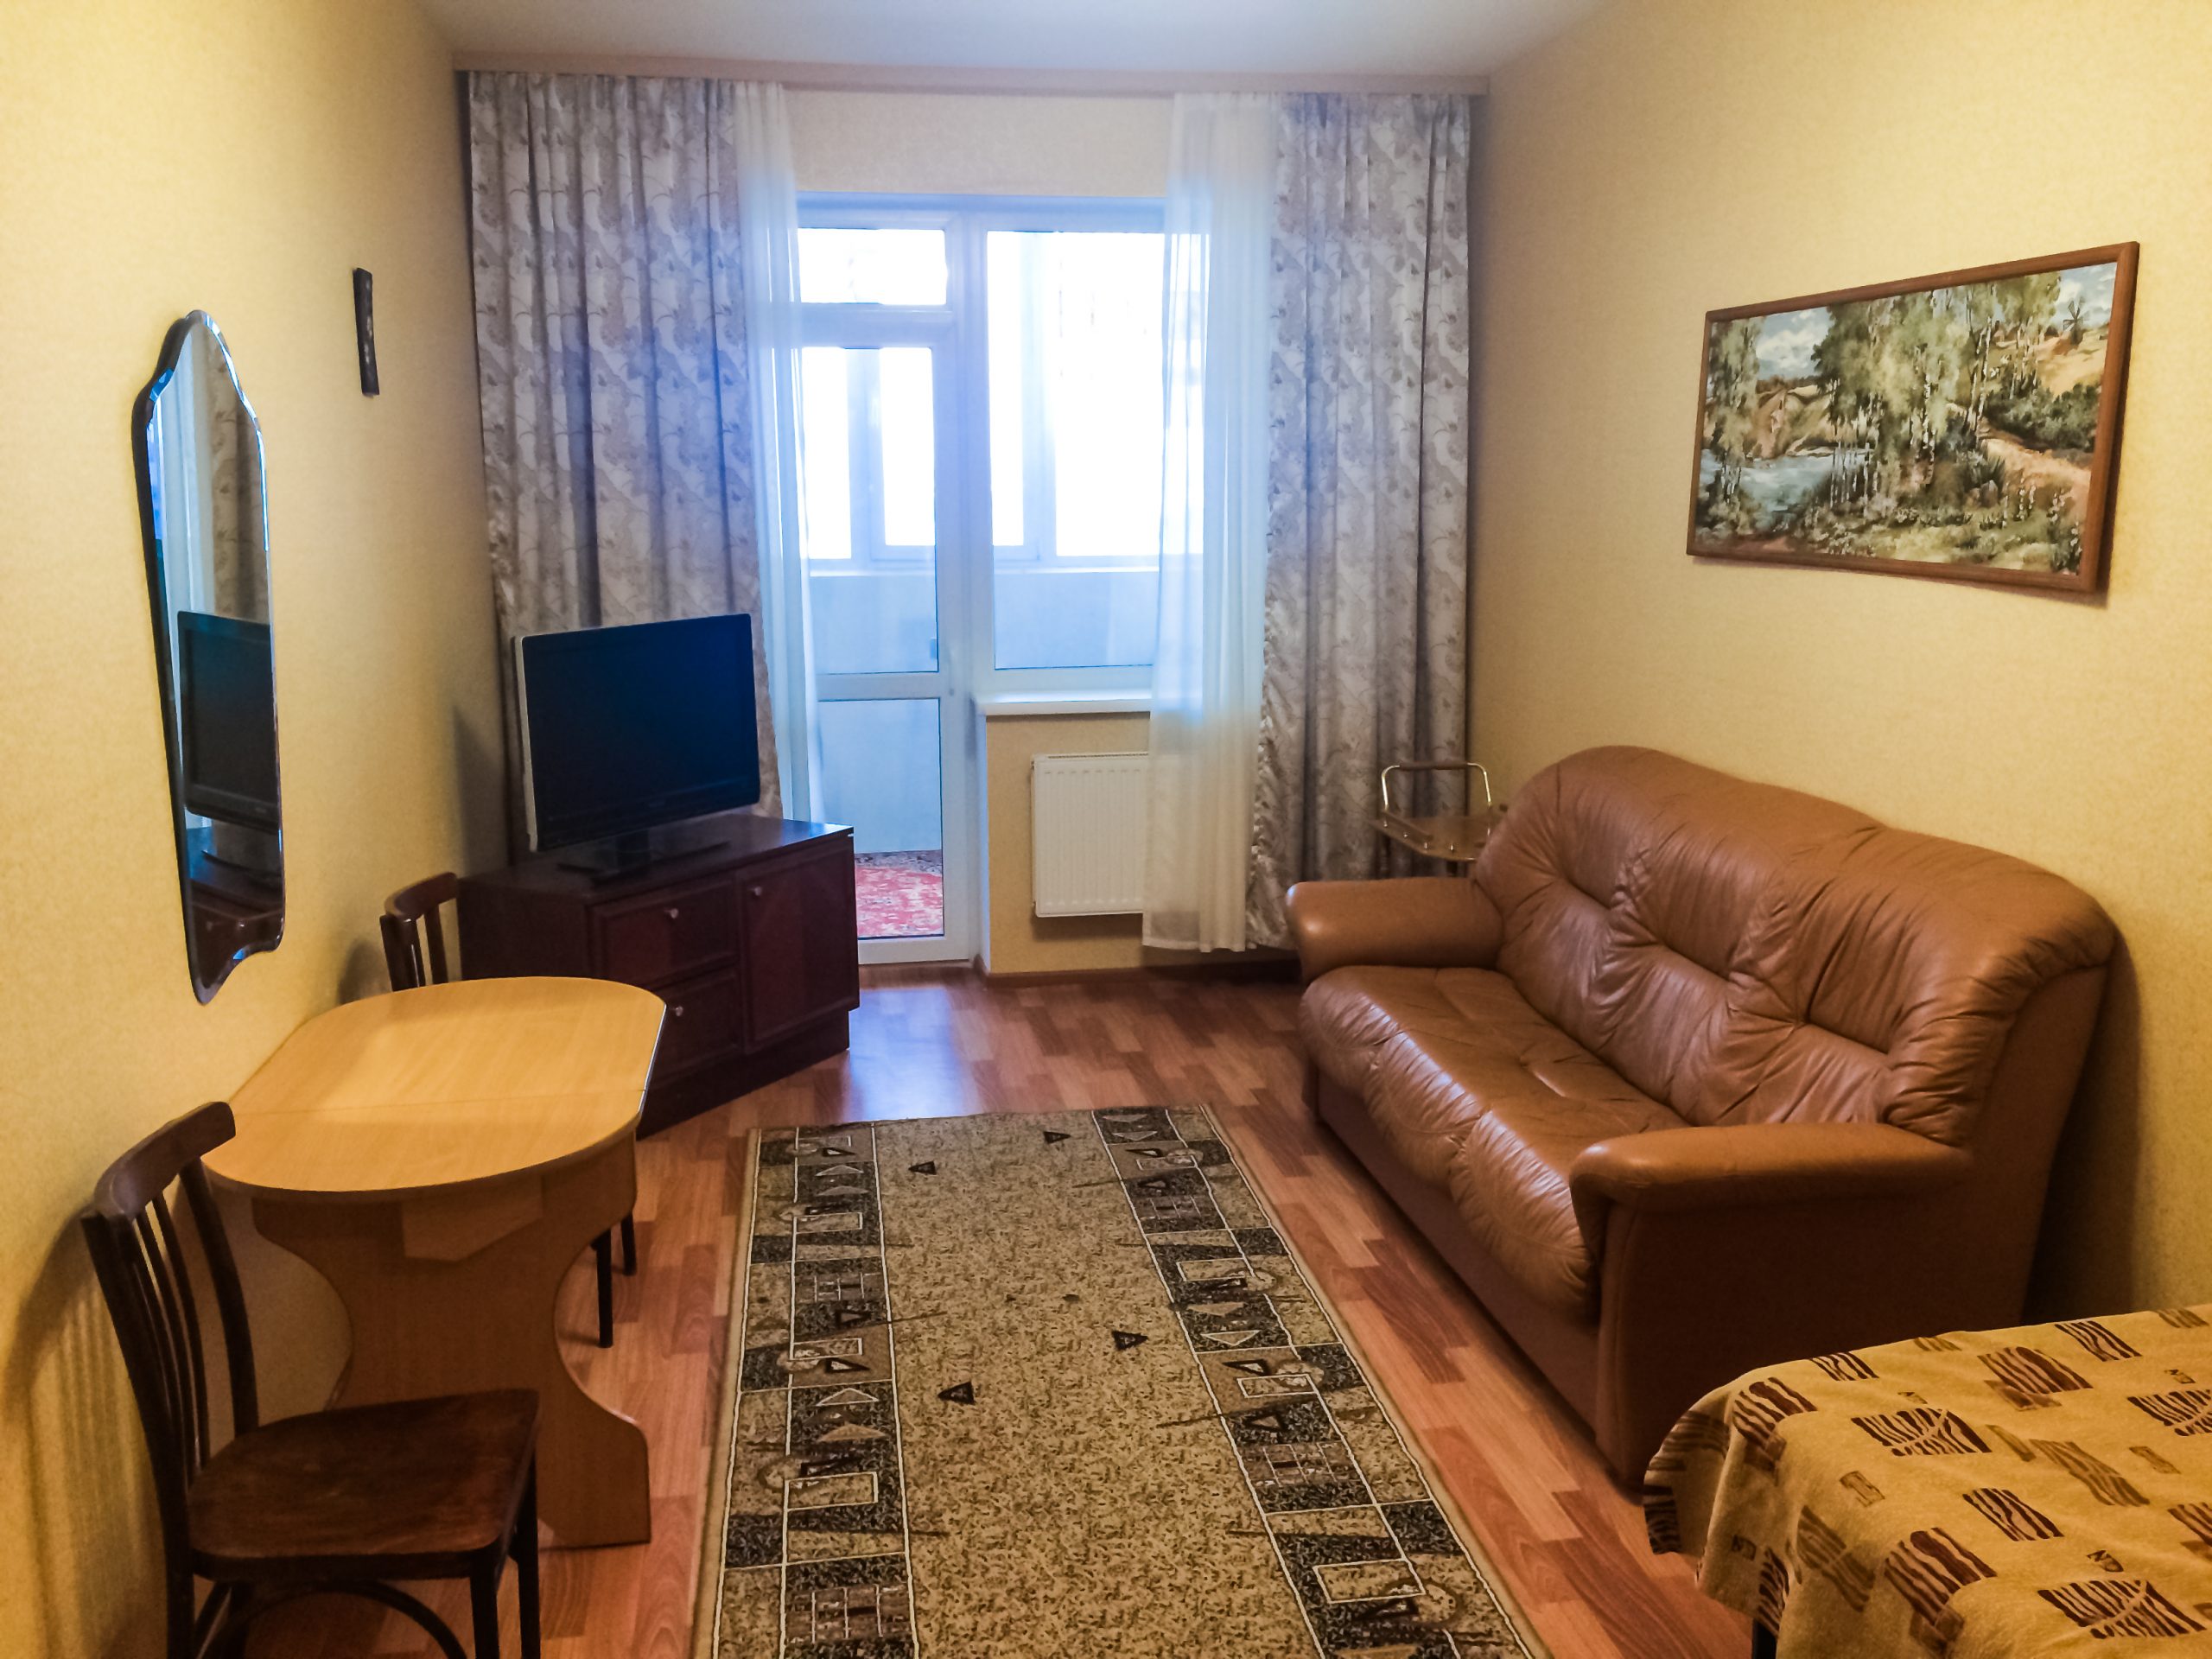 Однокомнатная квартира на ул. Чернышевского 17д (40кв.м)до 4 гостей